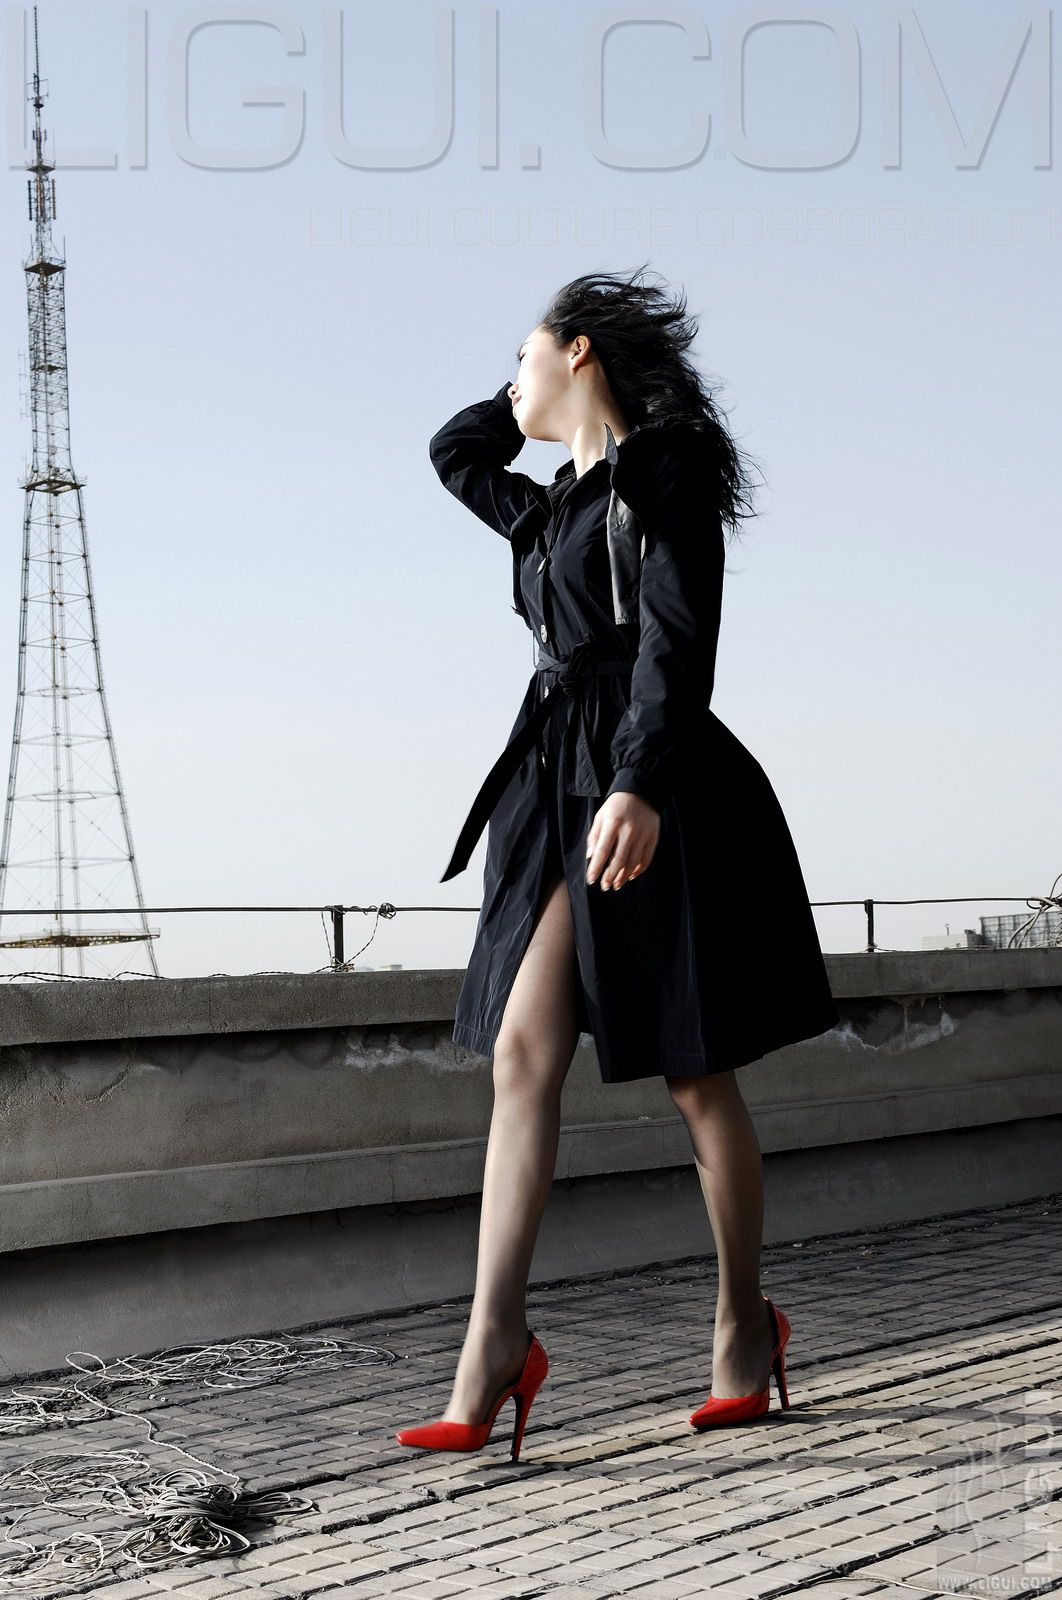 [柜 ligui] Model Cheng Helen Red and Black silk foot picture